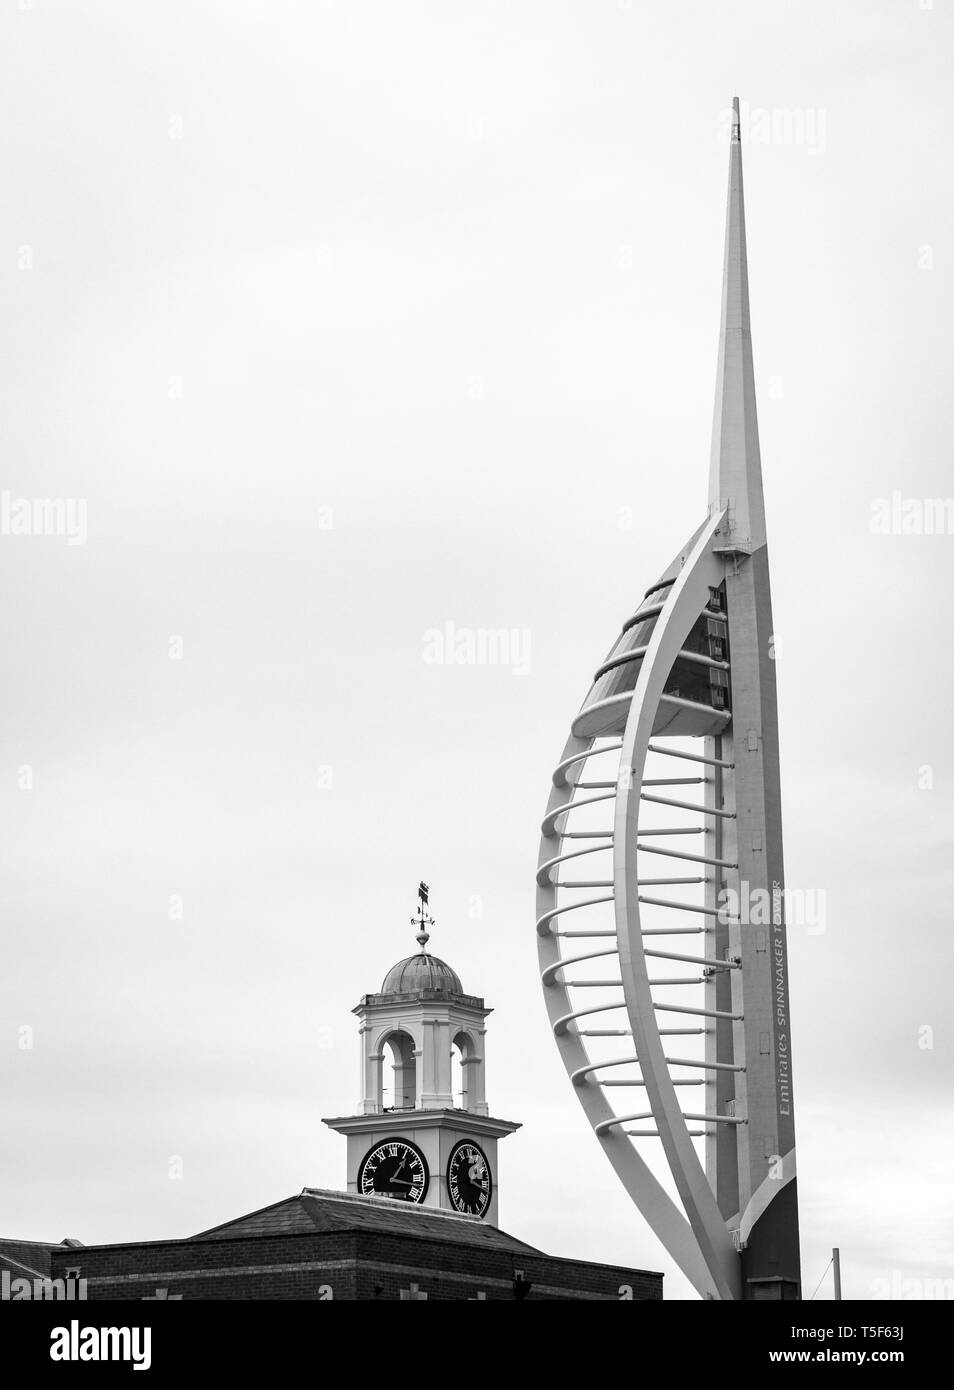 Vue de la tour Spinnaker et l'immeuble Vulcan tour de l'horloge, Portsmouth, Hampshire, Royaume-Uni Banque D'Images